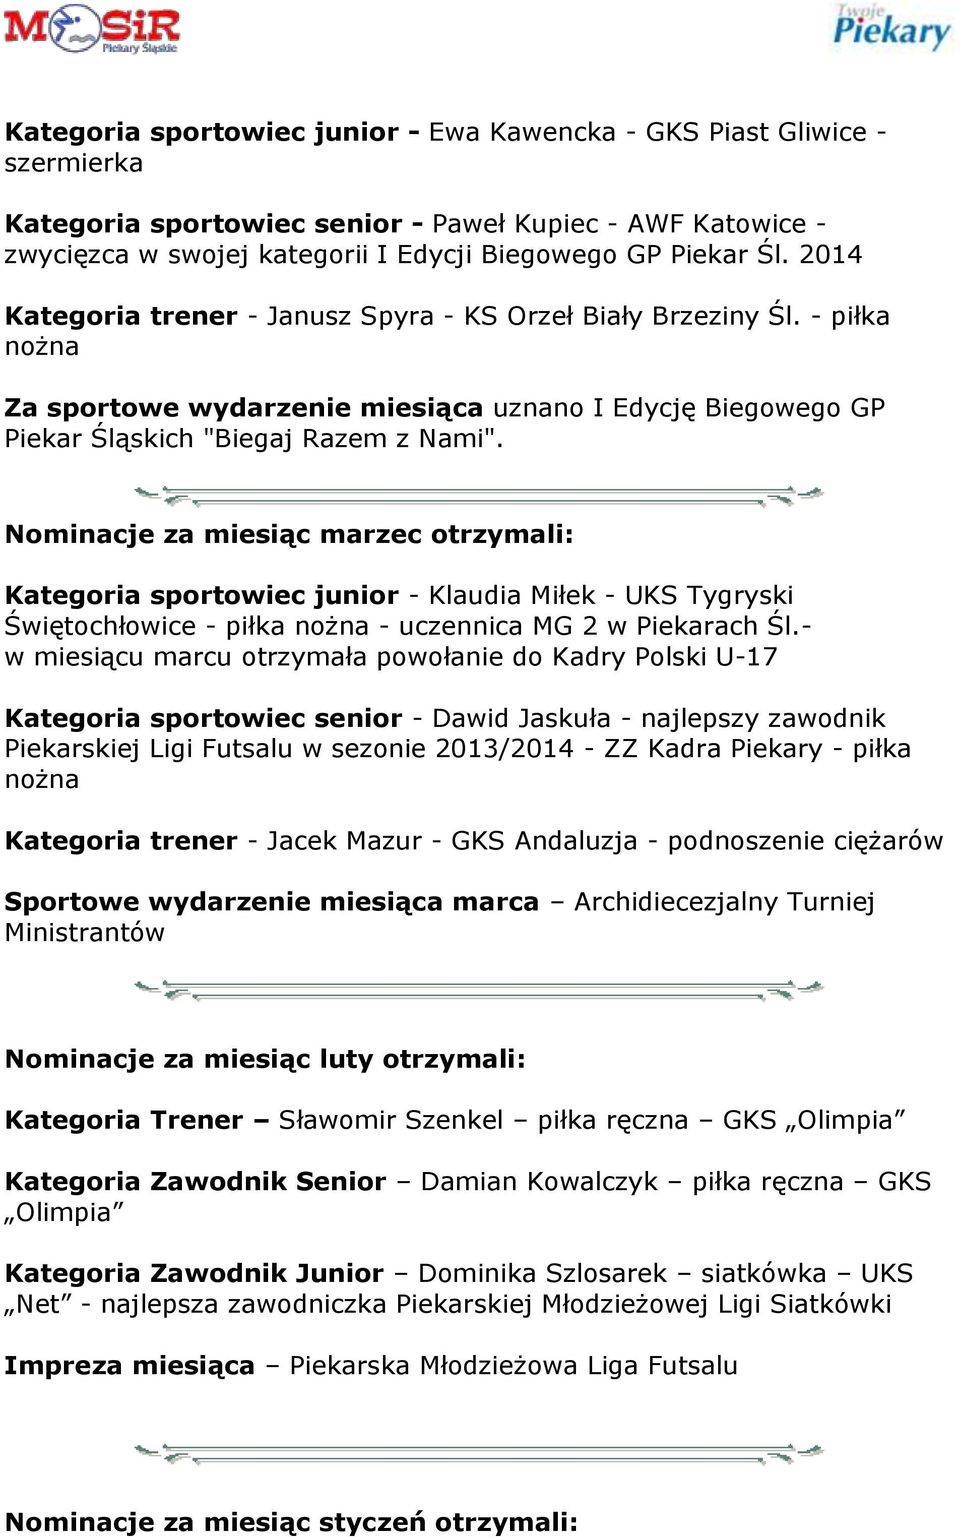 Nominacje za miesiąc marzec otrzymali: Kategoria sportowiec junior - Klaudia Miłek - UKS Tygryski Świętochłowice - piłka nożna - uczennica MG 2 w Piekarach Śl.